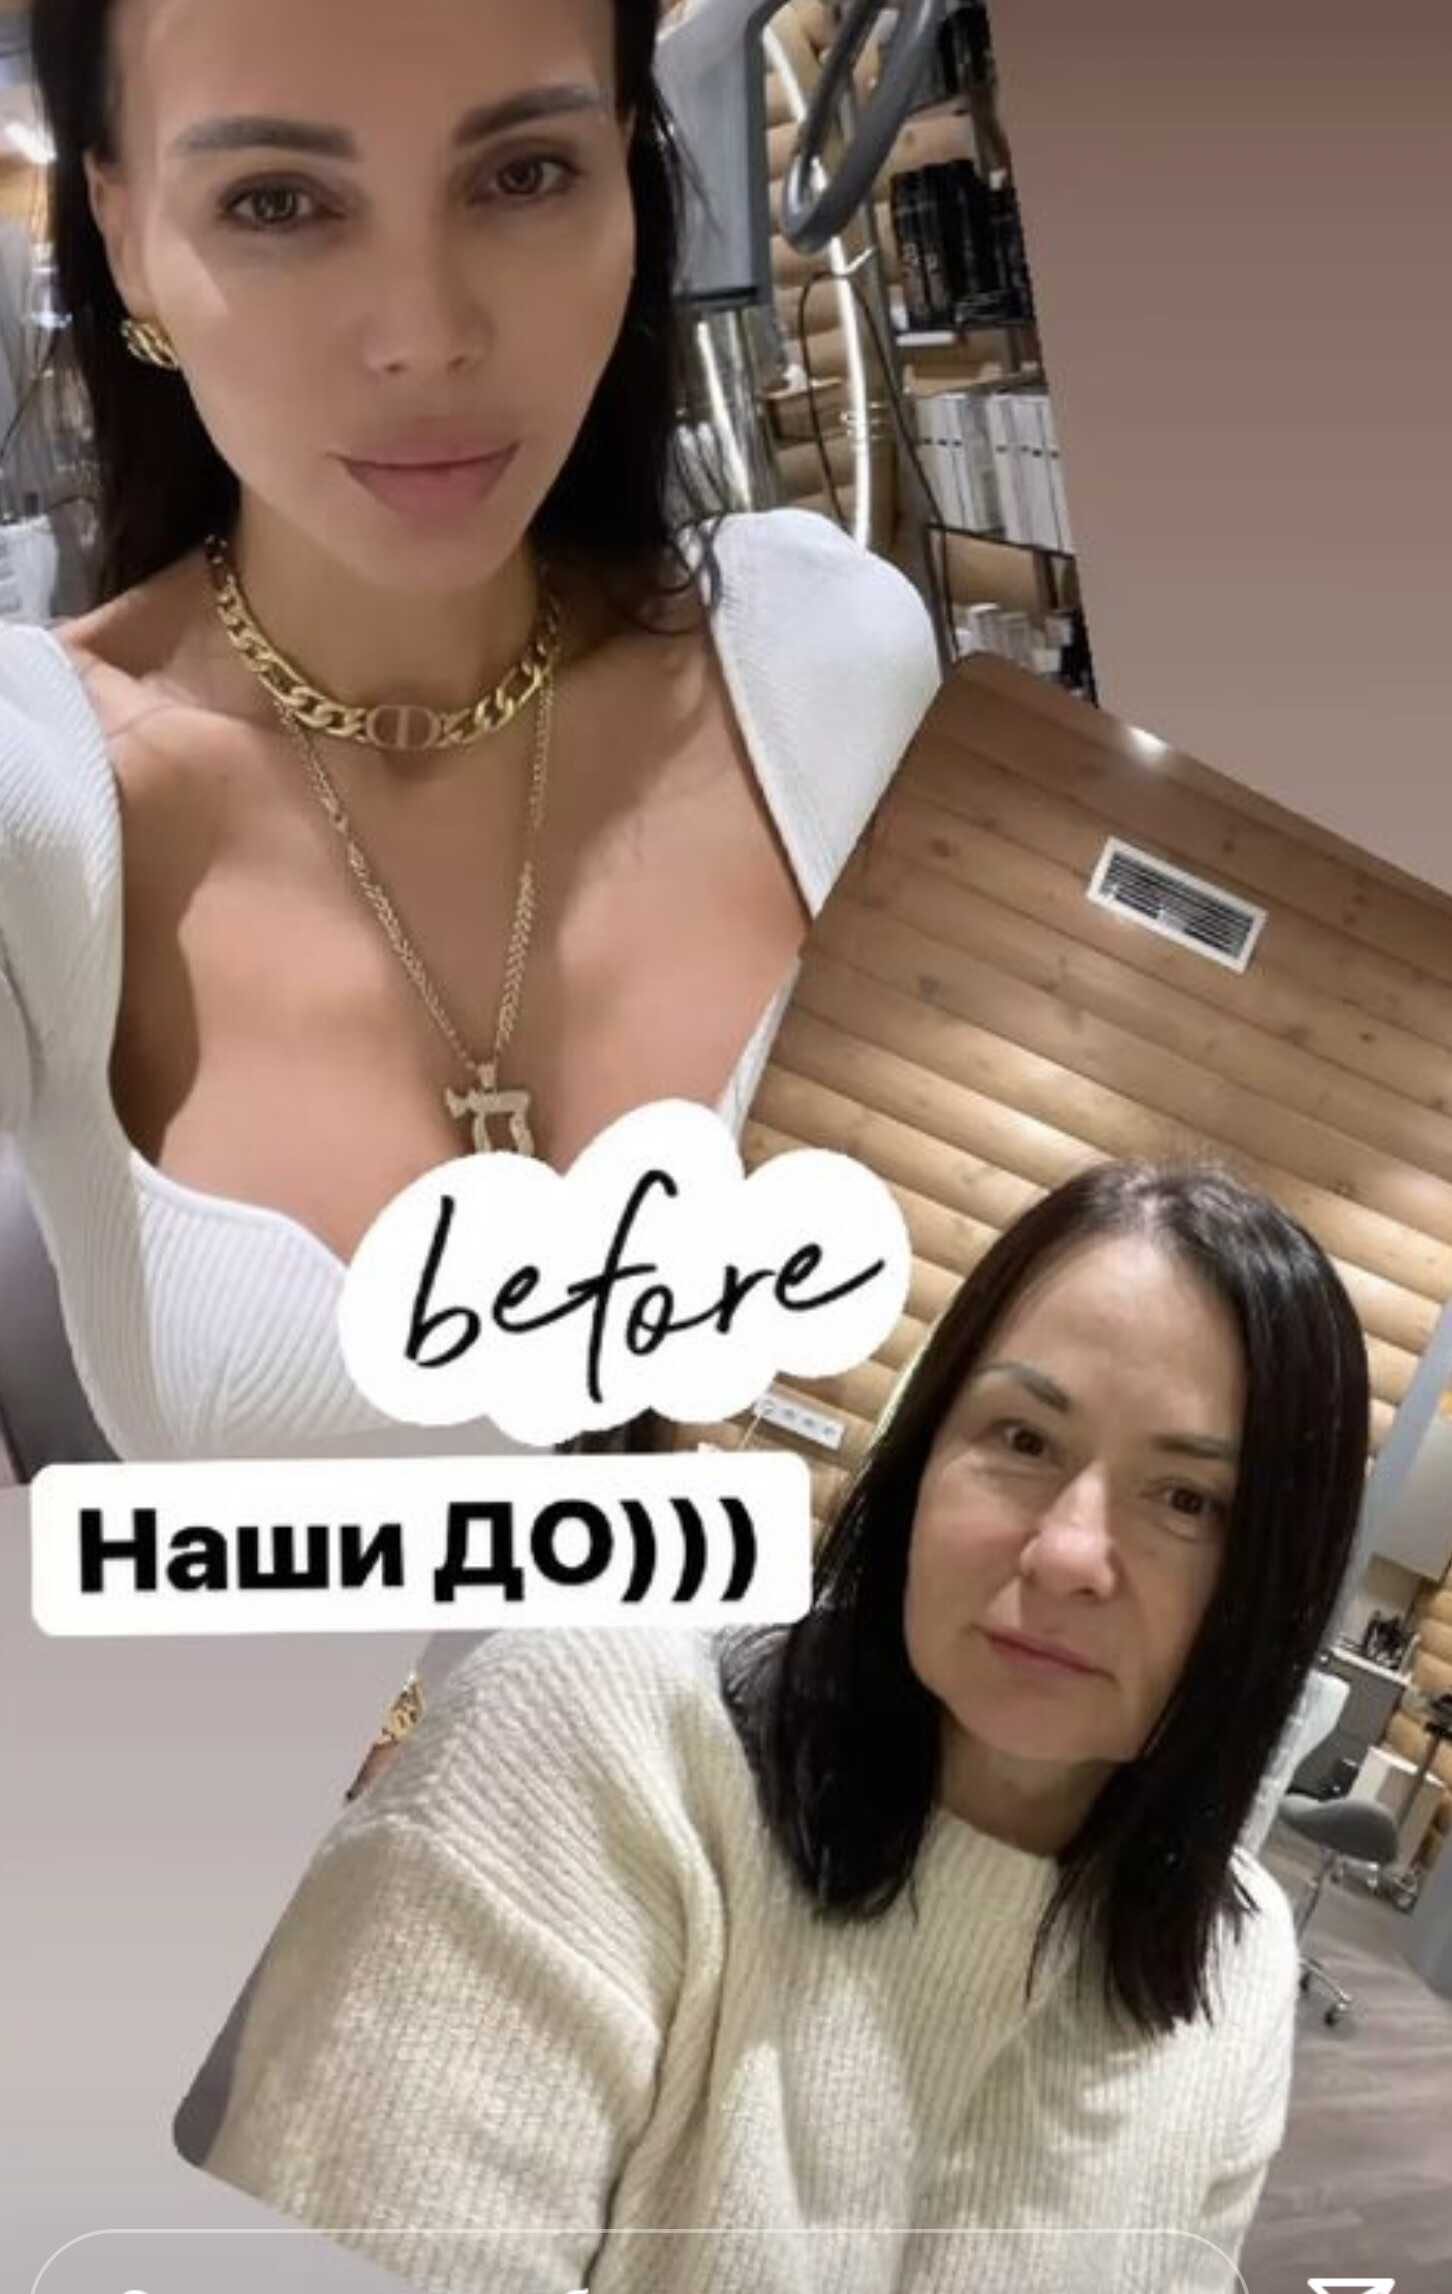 Оксана Самойлова сходила с салон красоты вместе с мамой